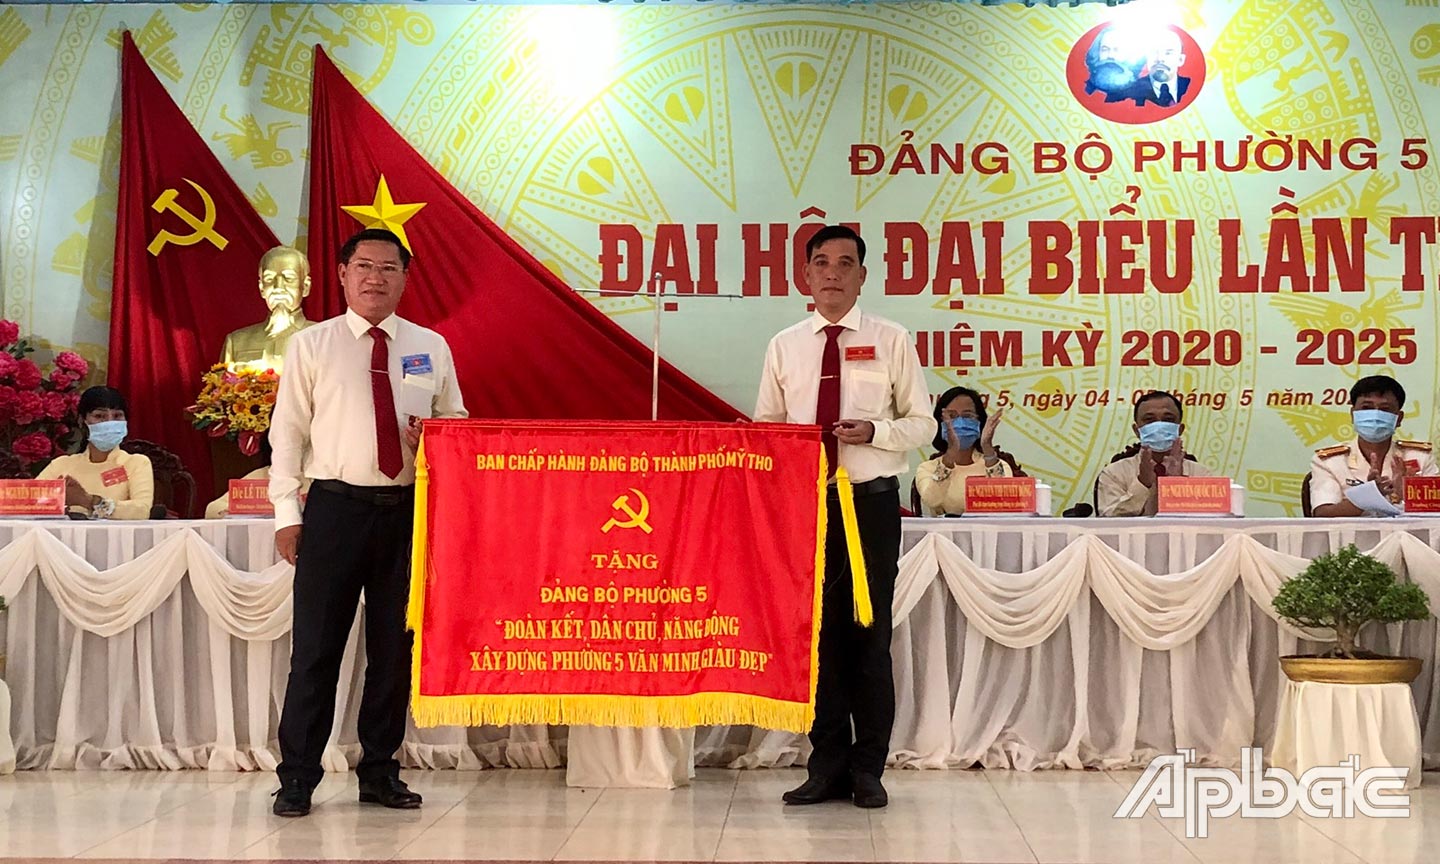 Đồng chí Đặng Thanh Liêm (bên trái) trao bức trướng của Ban Chấp hành Đảng bộ TP. Mỹ Tho tặng Đảng bộ phường 5 với dòng chữ “Đoàn kết, dân chủ, năng động xây dựng phường 5 văn minh, giàu đẹp”.